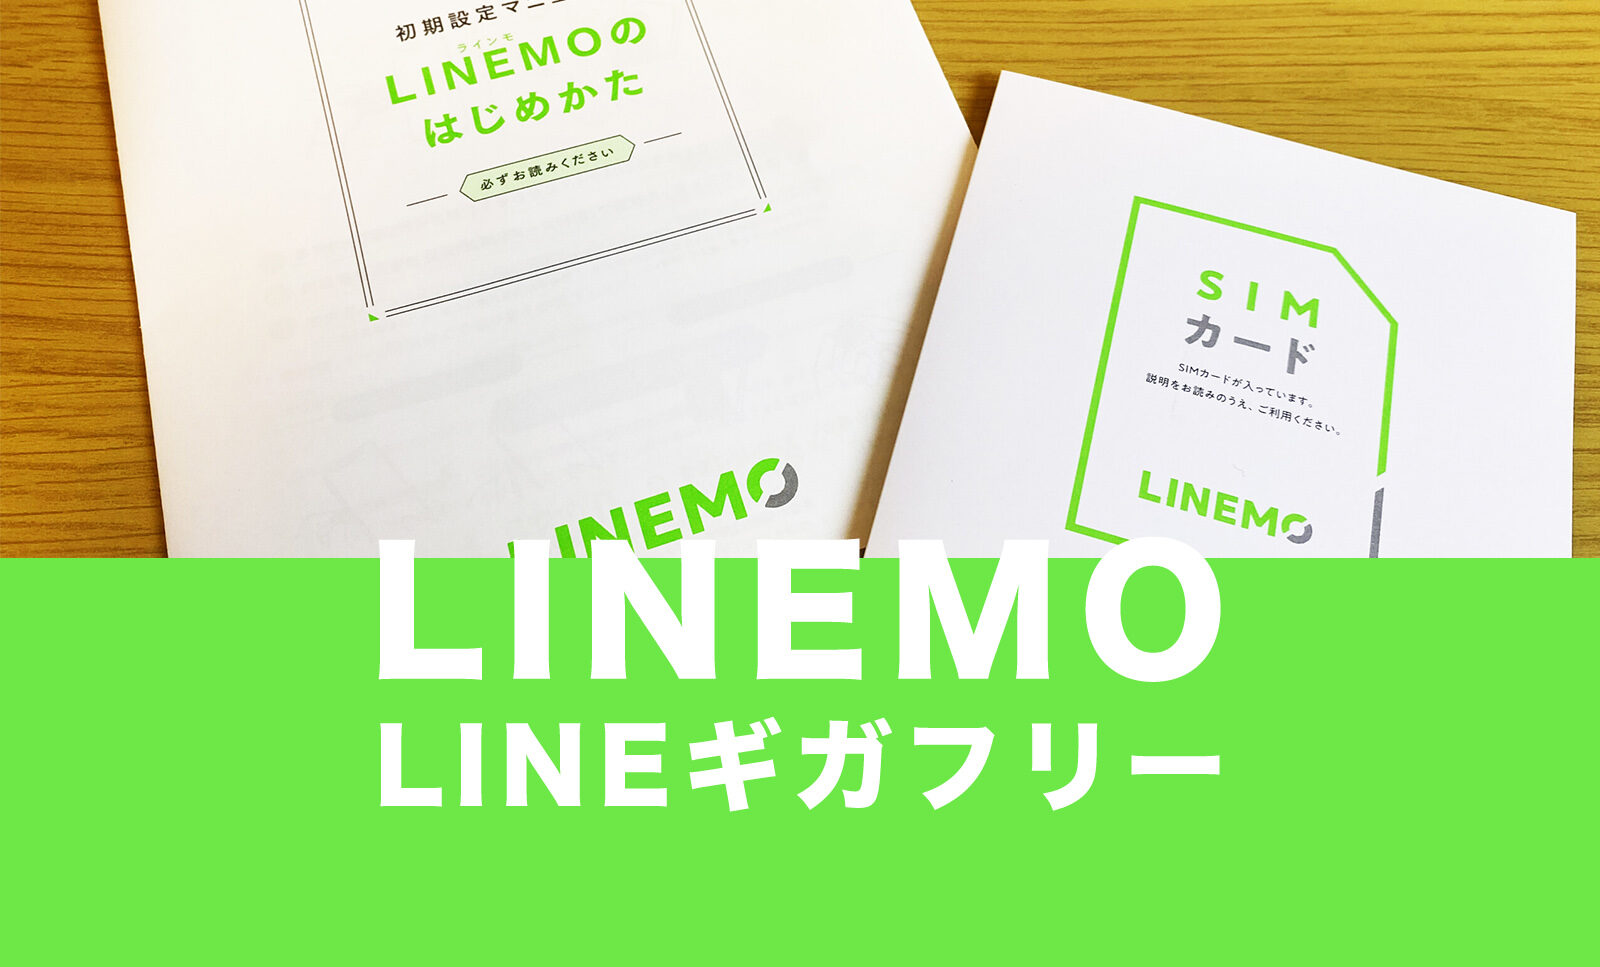 LINEMO(ラインモ)のLINEギガフリー&ギガノーカウント対象分を詳しく解説！のサムネイル画像